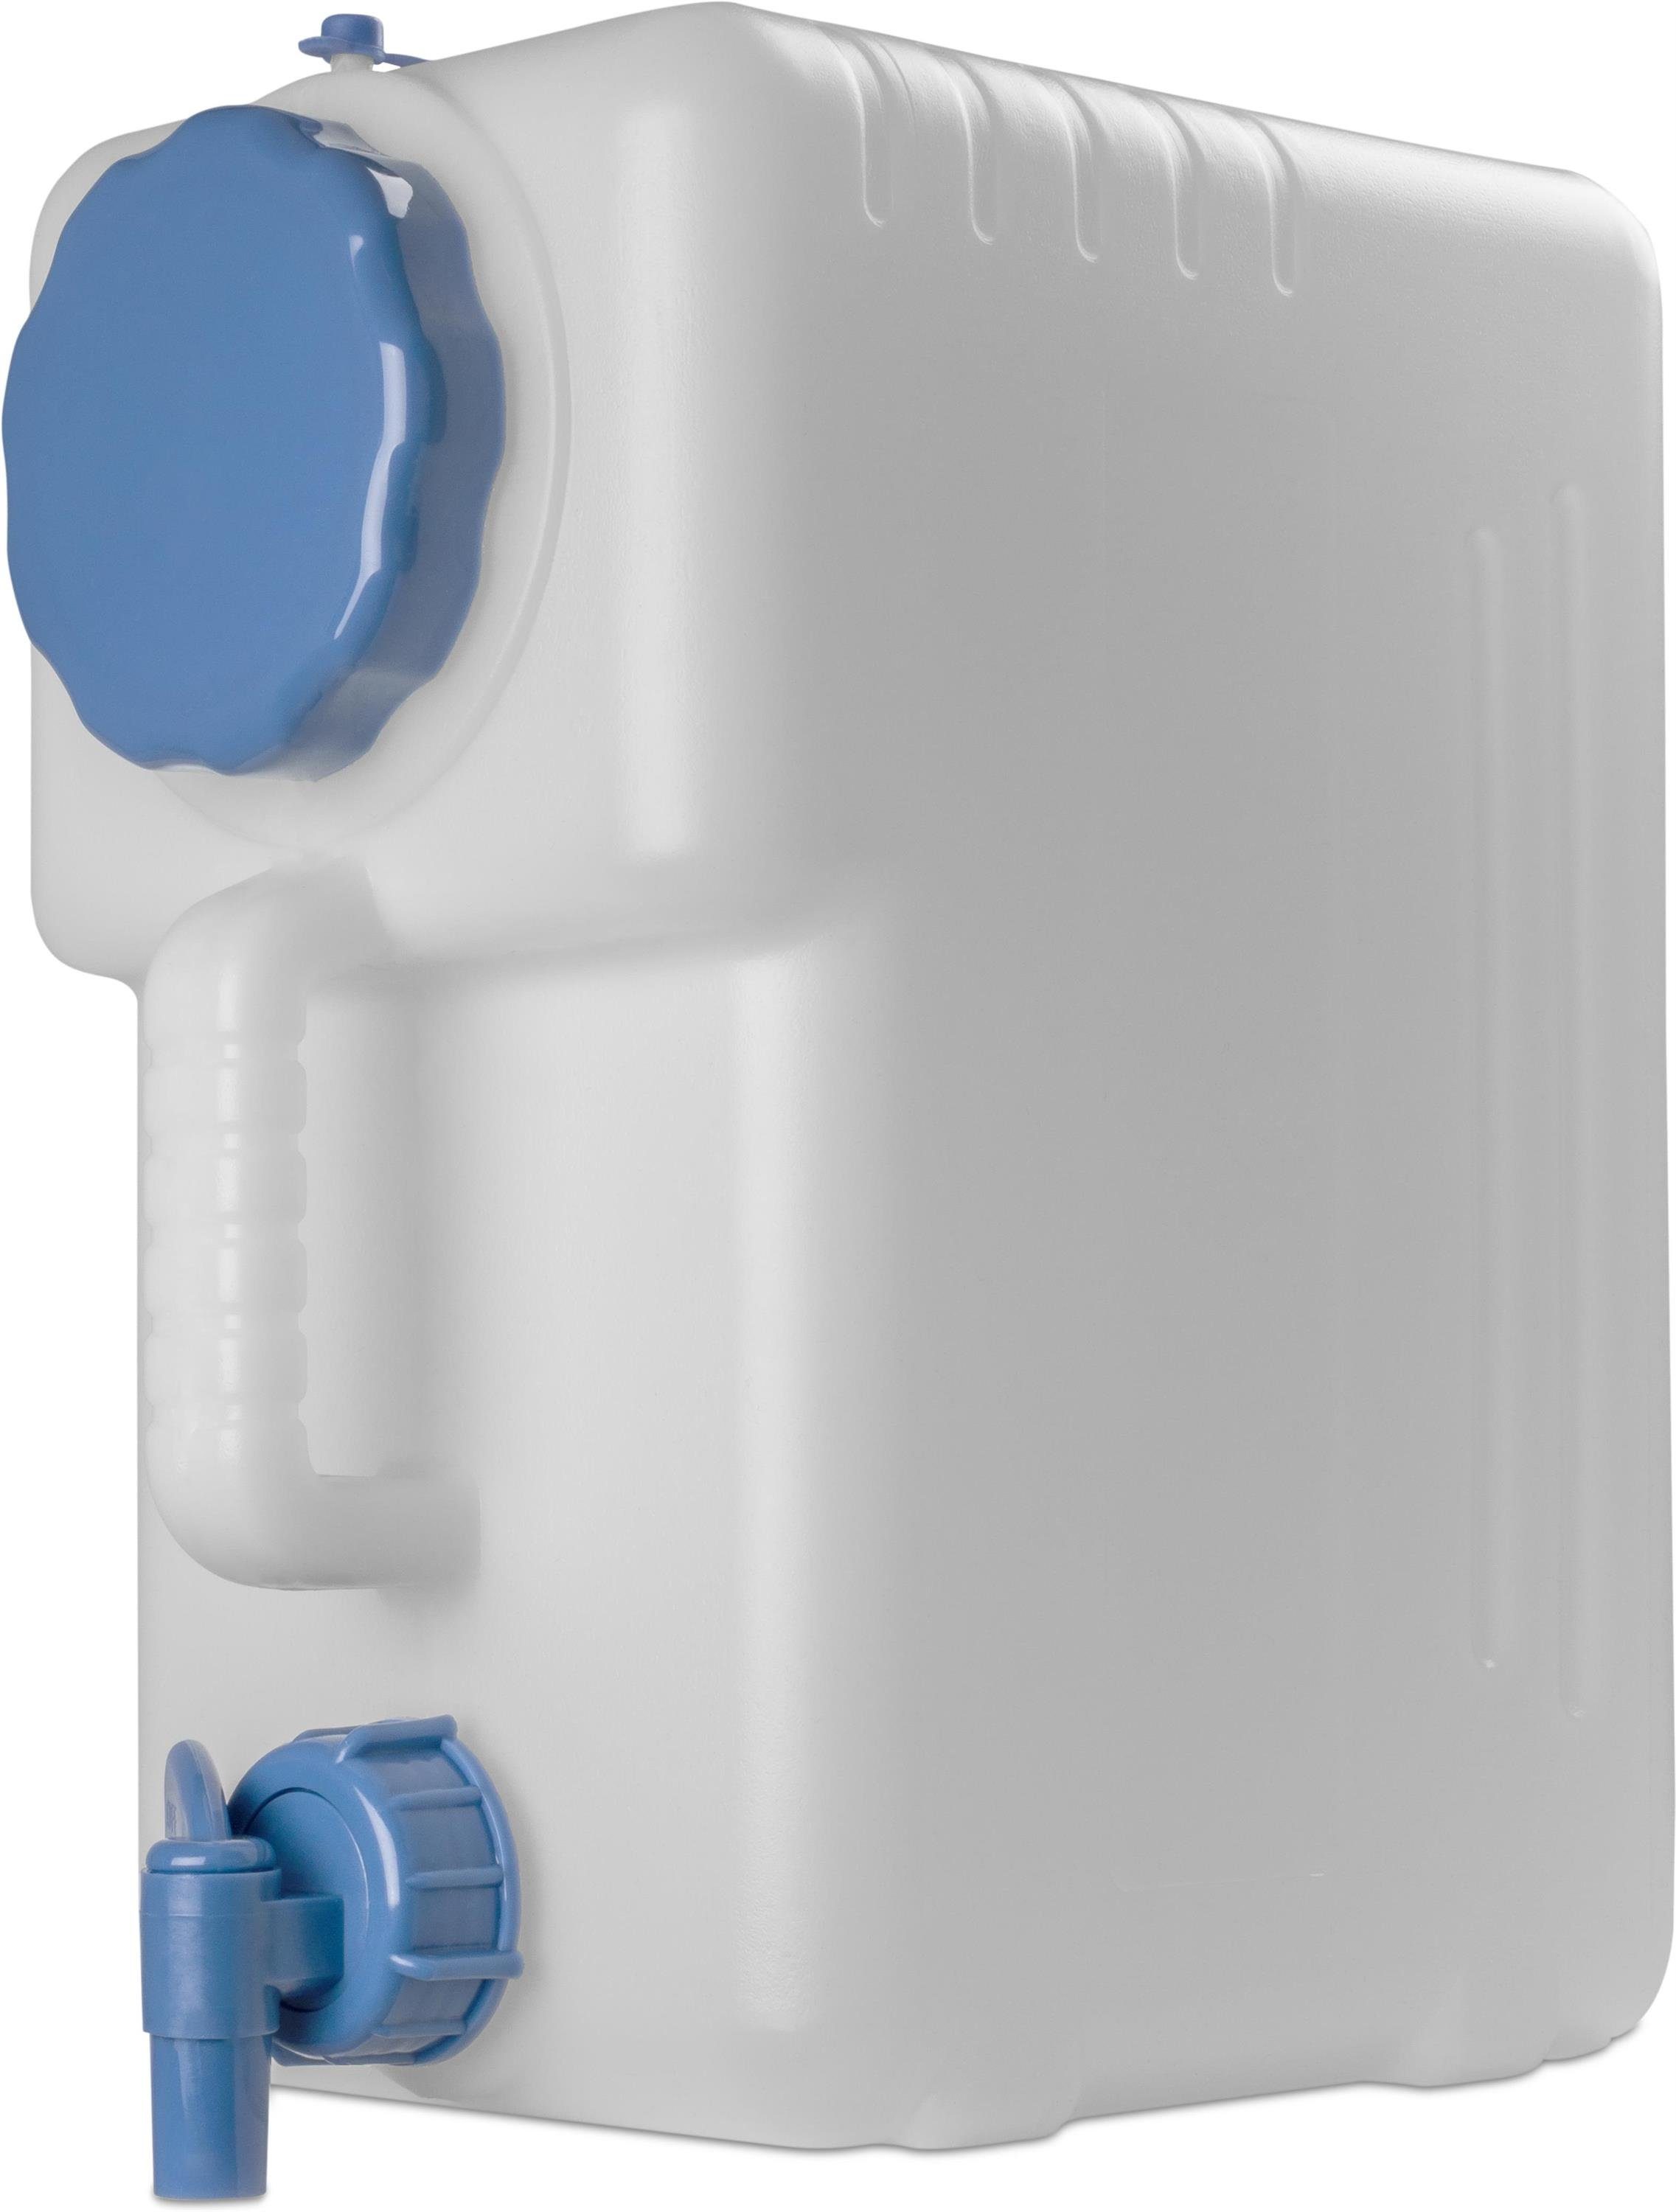 Kanister Wasserkanister 10l mit Wasserhahn für LKW Camping